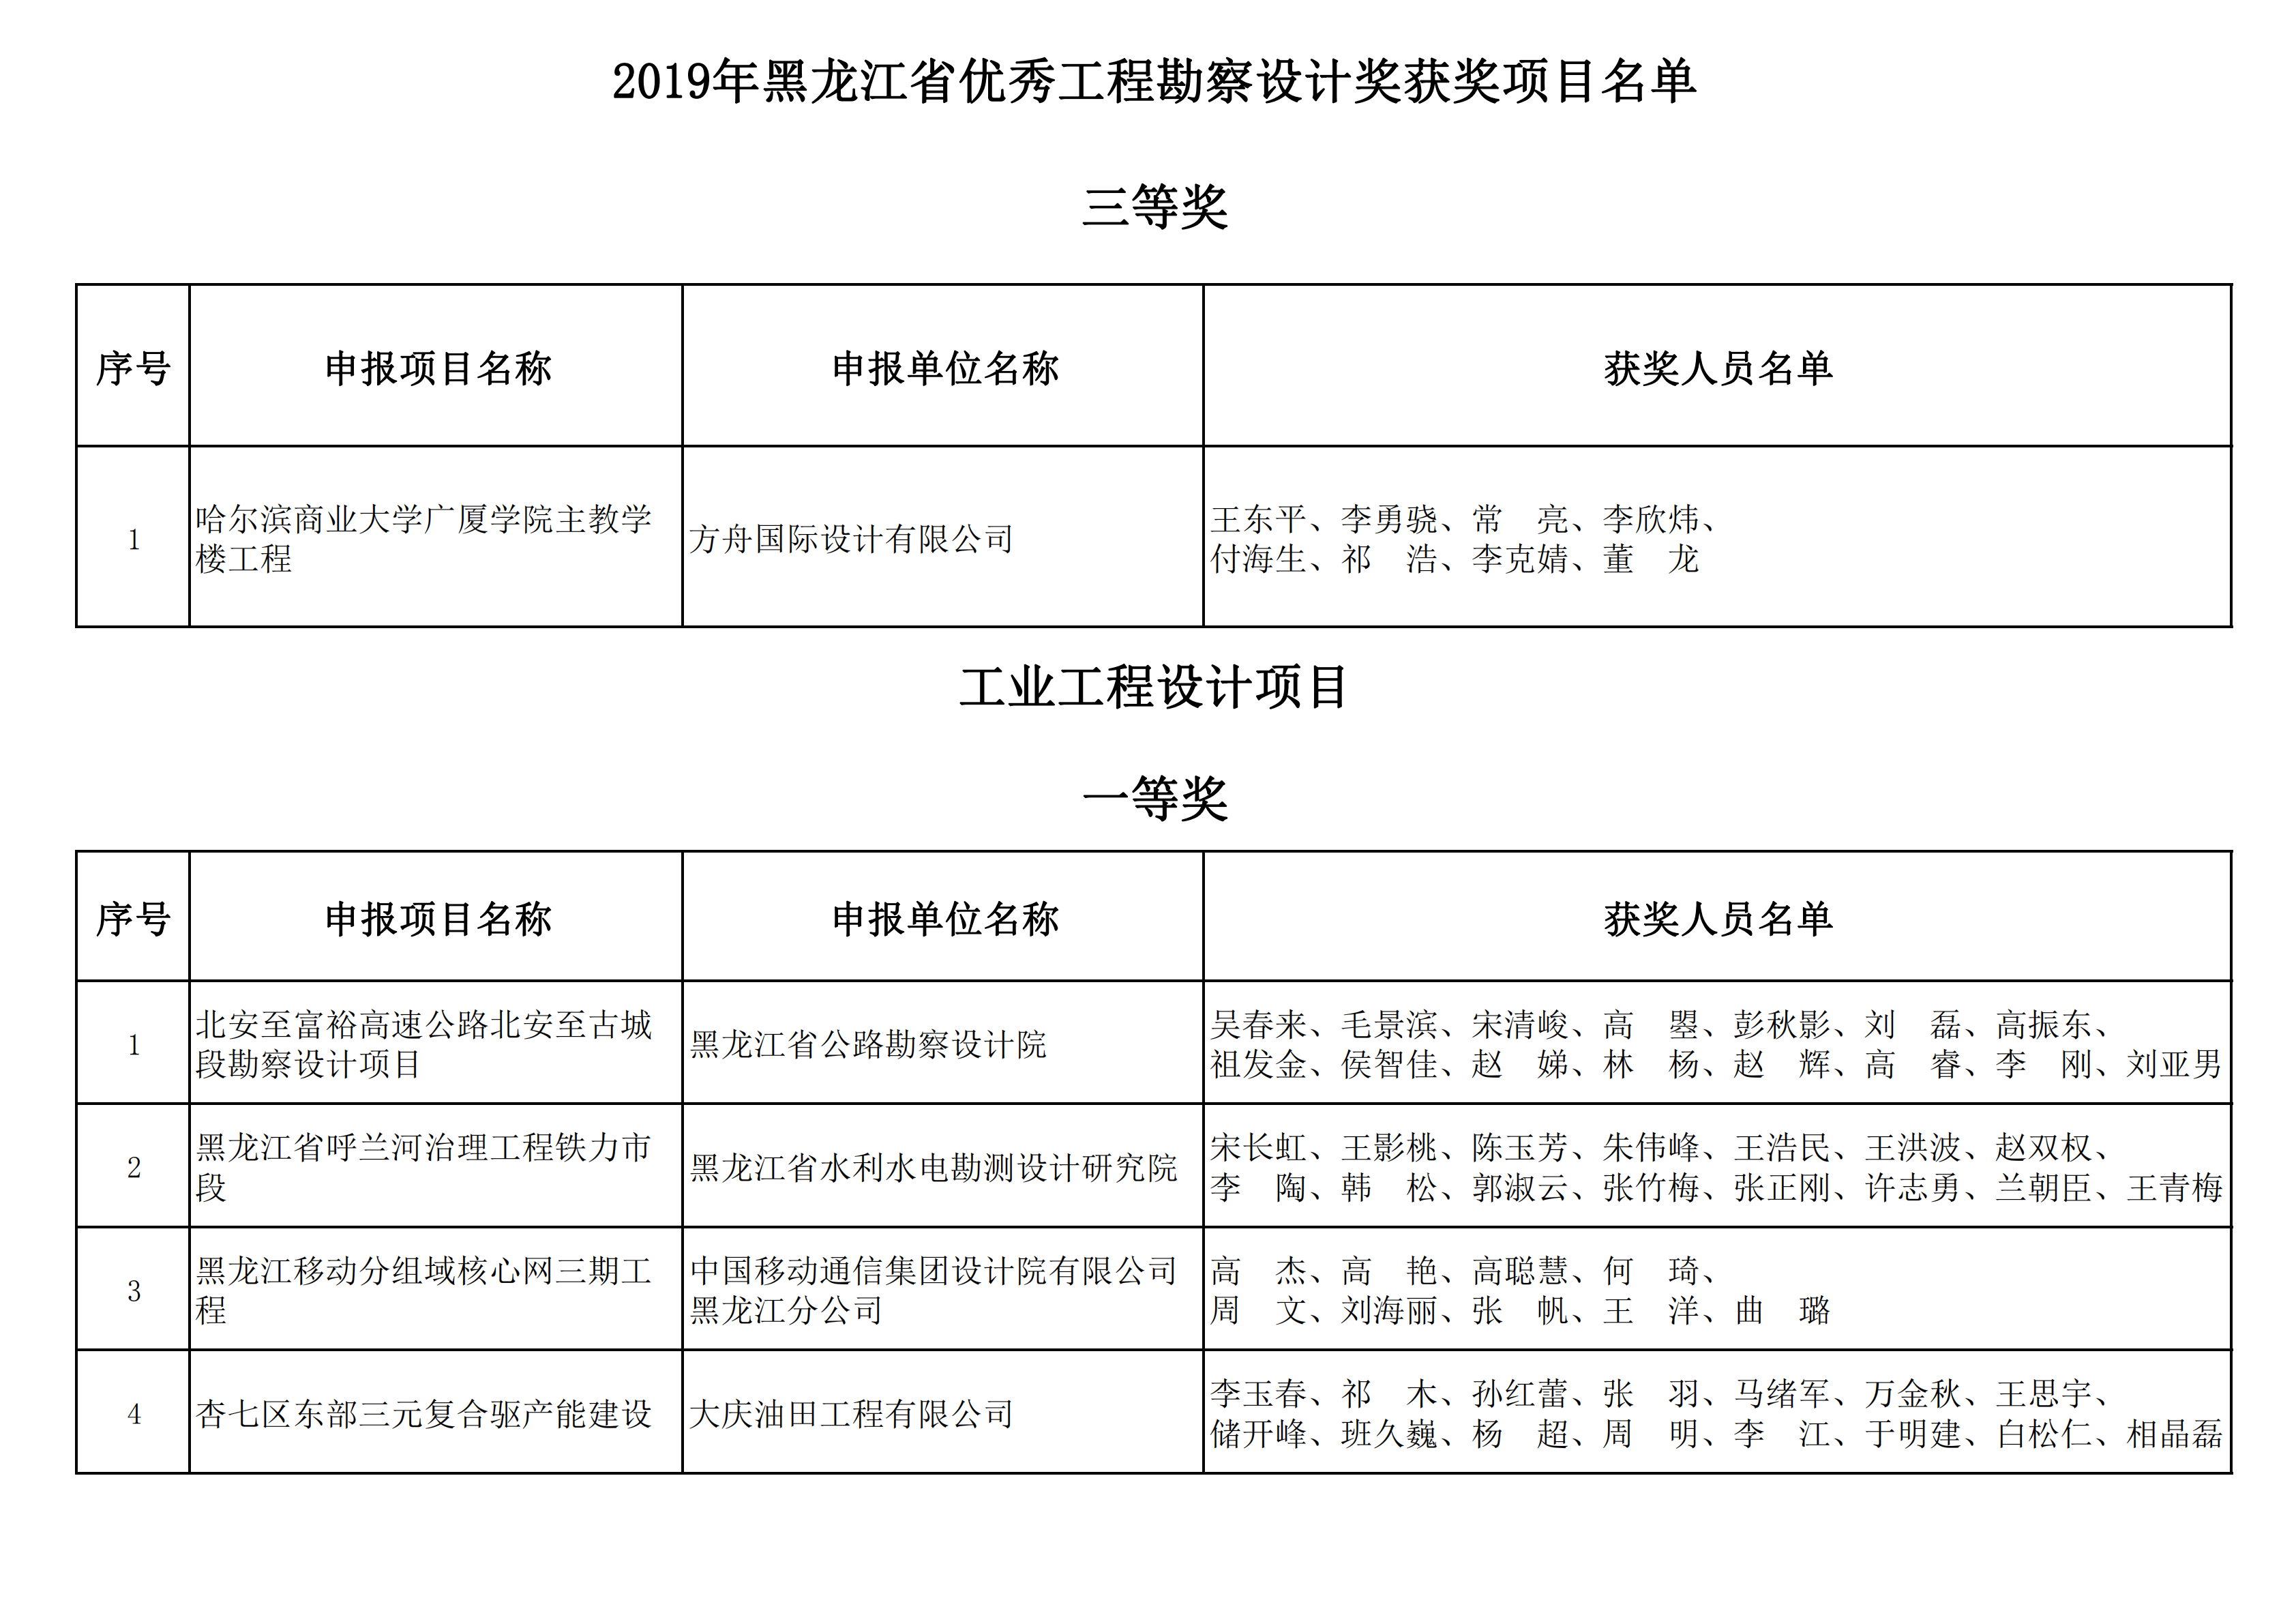 2019年黑龙江省优秀工程勘察设计奖获奖项目名单_09.png